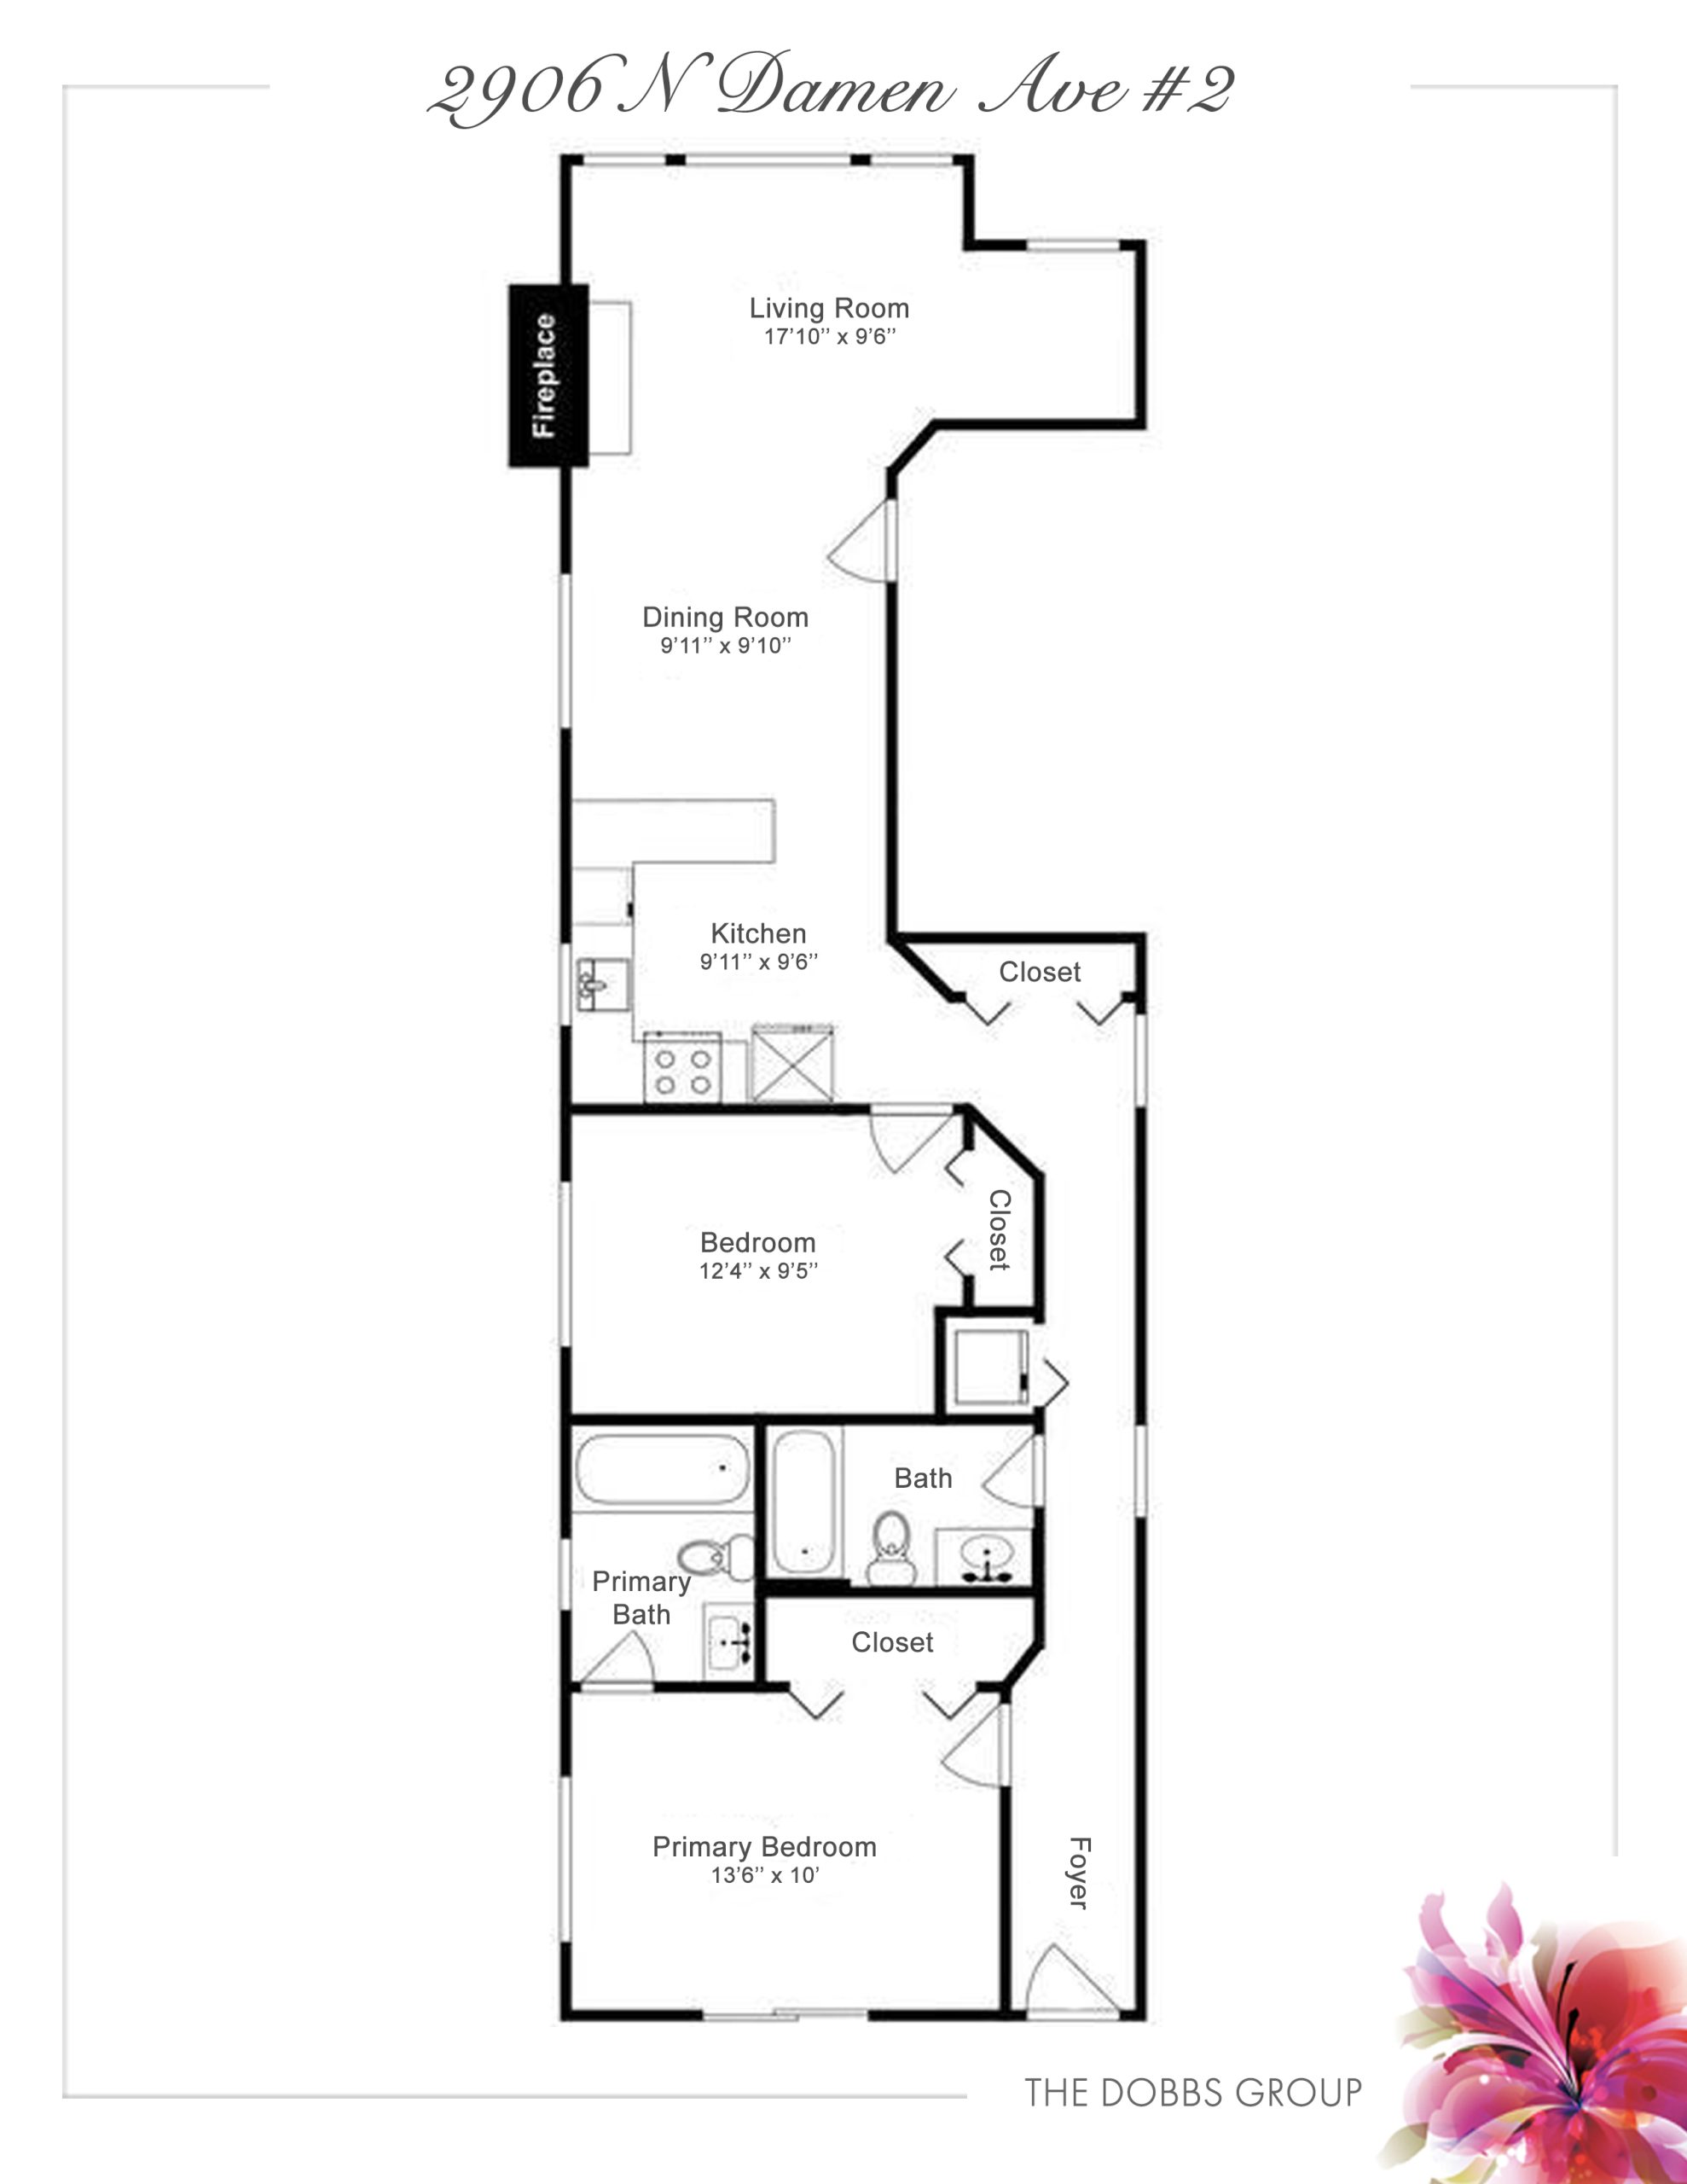 Floor Plan - 2906 N Damen Ave #2 Chicago, IL 60618, USA
